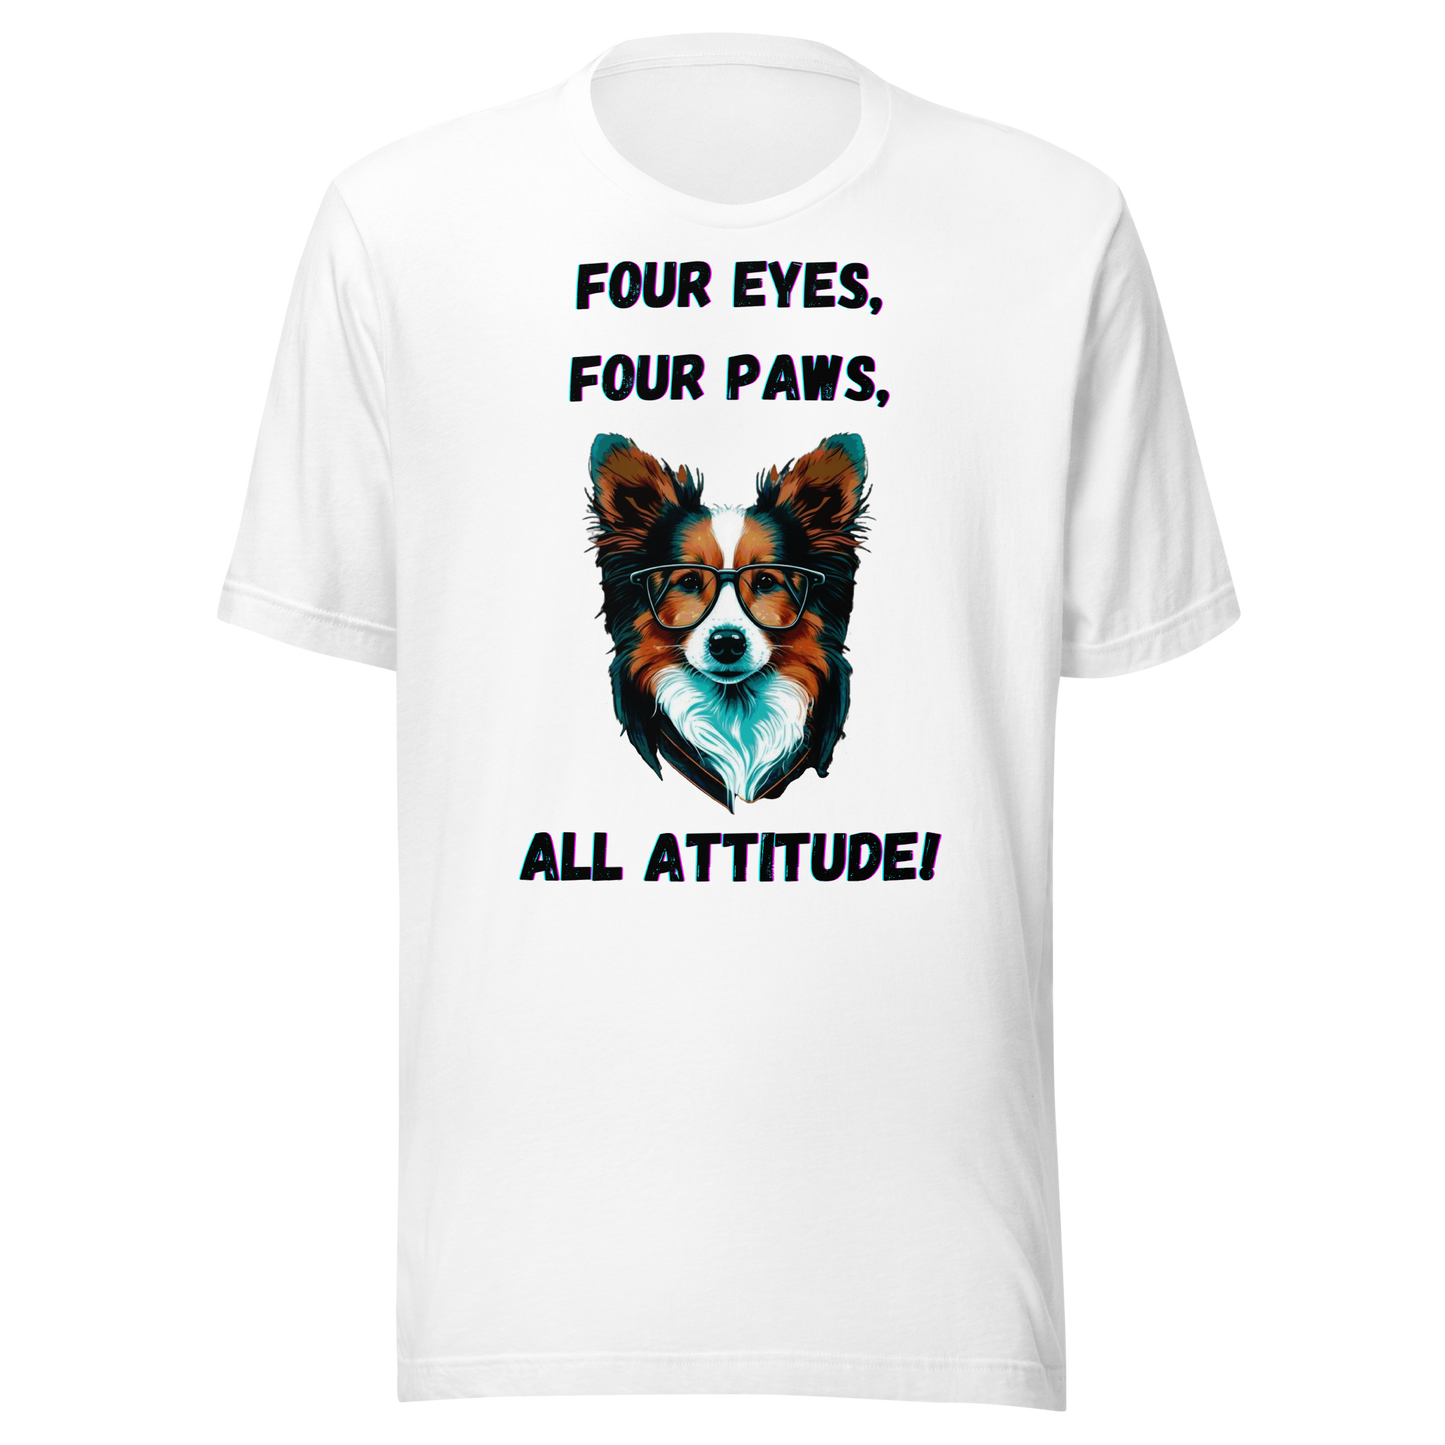 Unisex t-shirt. Print "Pawsitively Sassy: Four Eyes, Four Paws, All Attitude!"